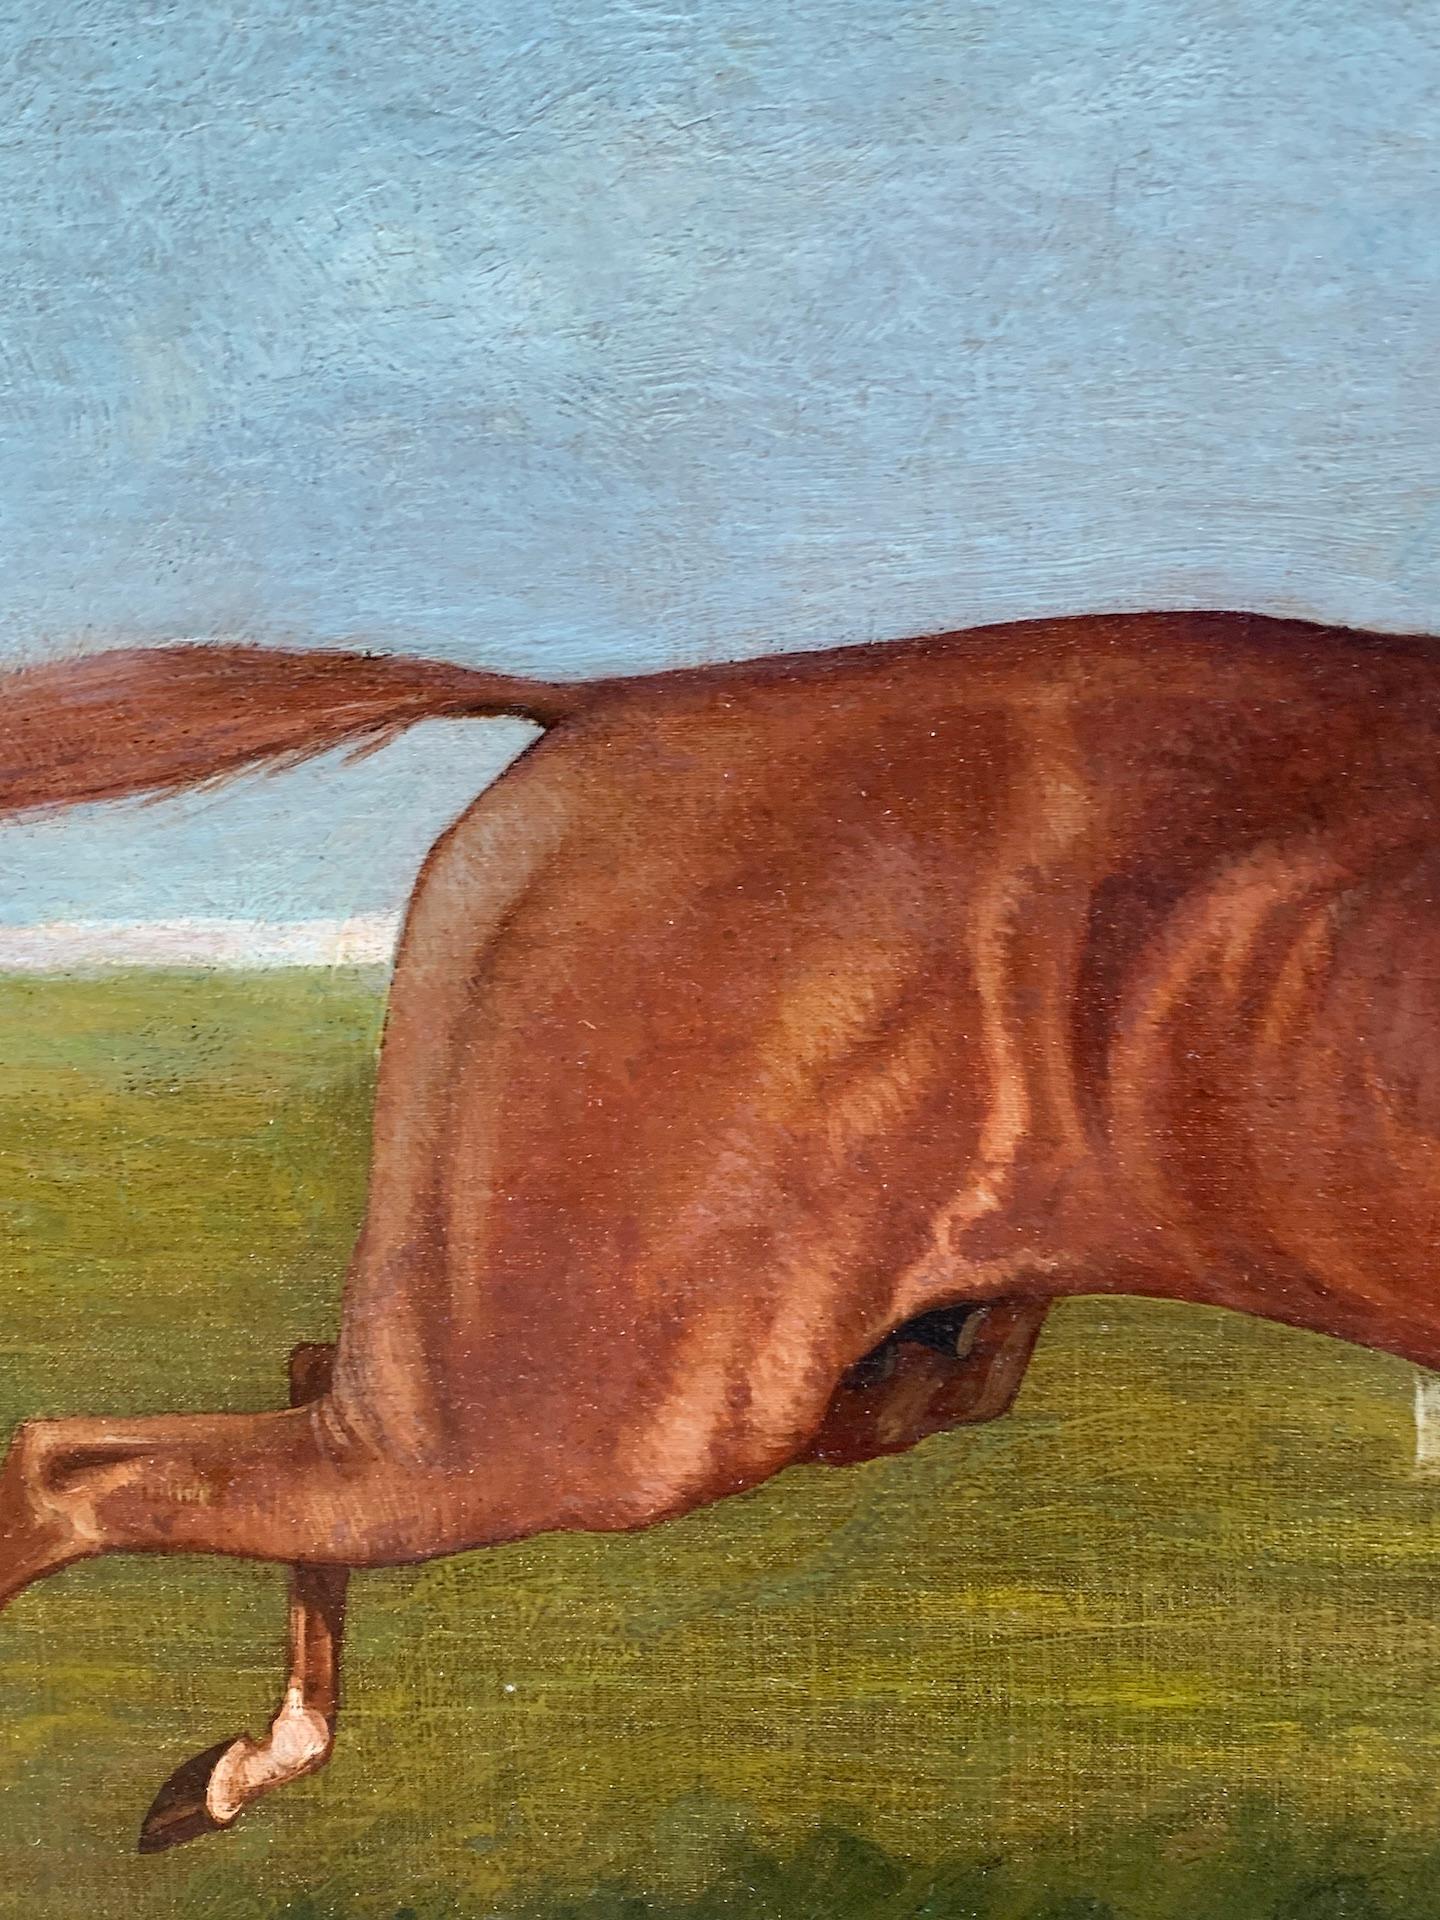  Antike englische Pferderennszene aus dem 19. Jahrhundert in einer Landschaft mit aufgestelltem Jockey.

Wunderschöne und sehr gut gemalte englische Pferderennszene. Ähnlich wie bei John Frederick Herring handelt es sich bei diesem Werk um eine